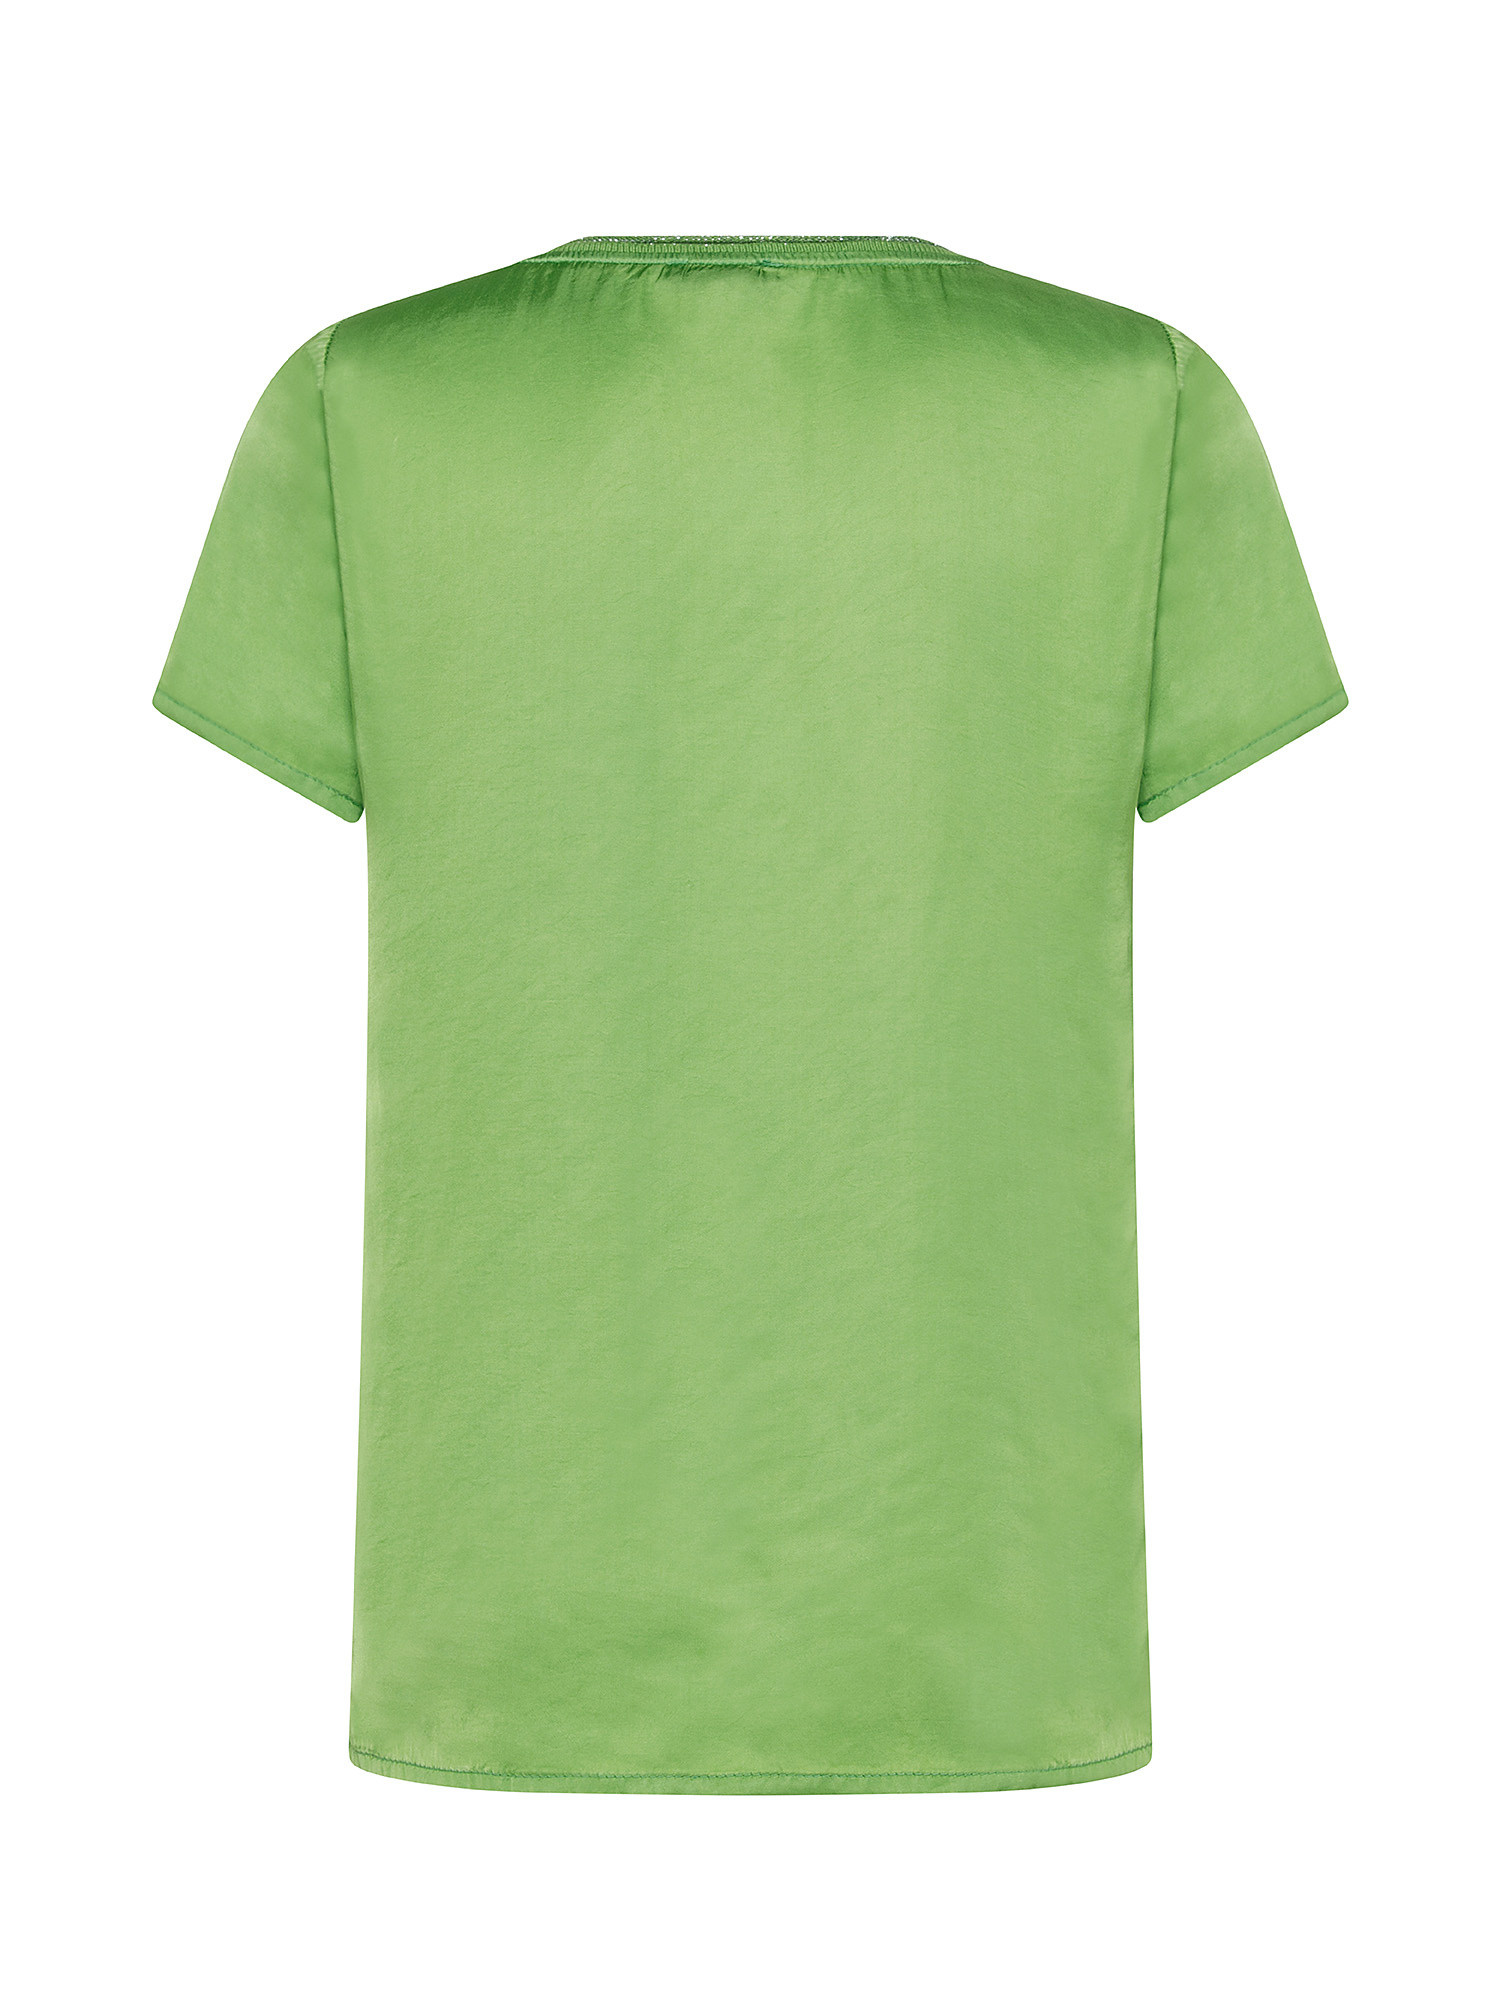 T-shirt con lurex, Verde, large